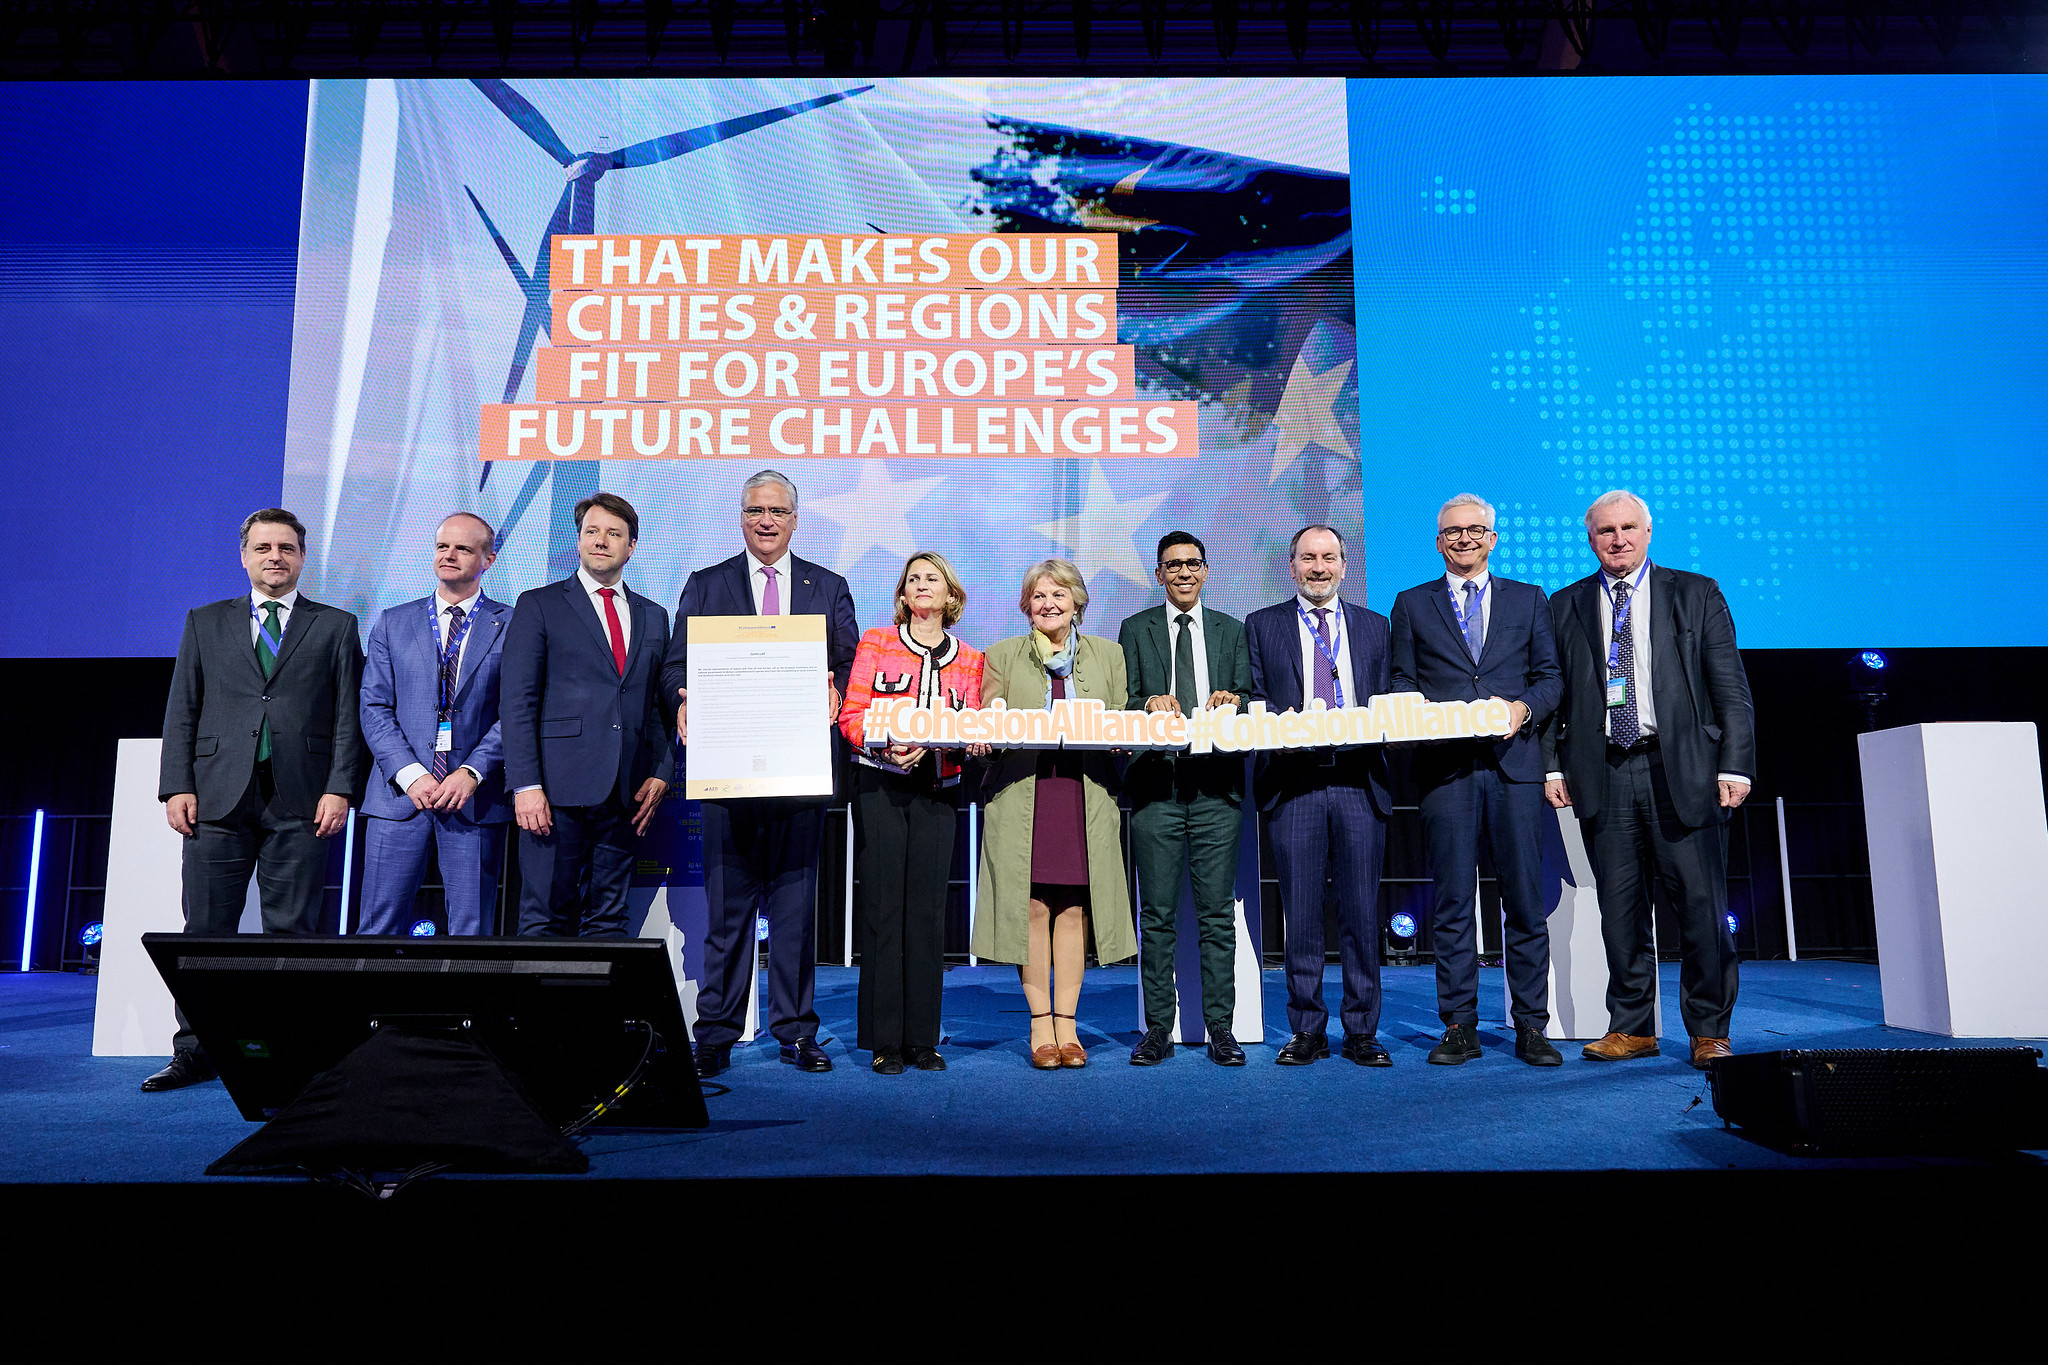 Décima Cumbre Europea de Regiones y Ciudades: Unidos por una Europa más fuerte, justa y resiliente